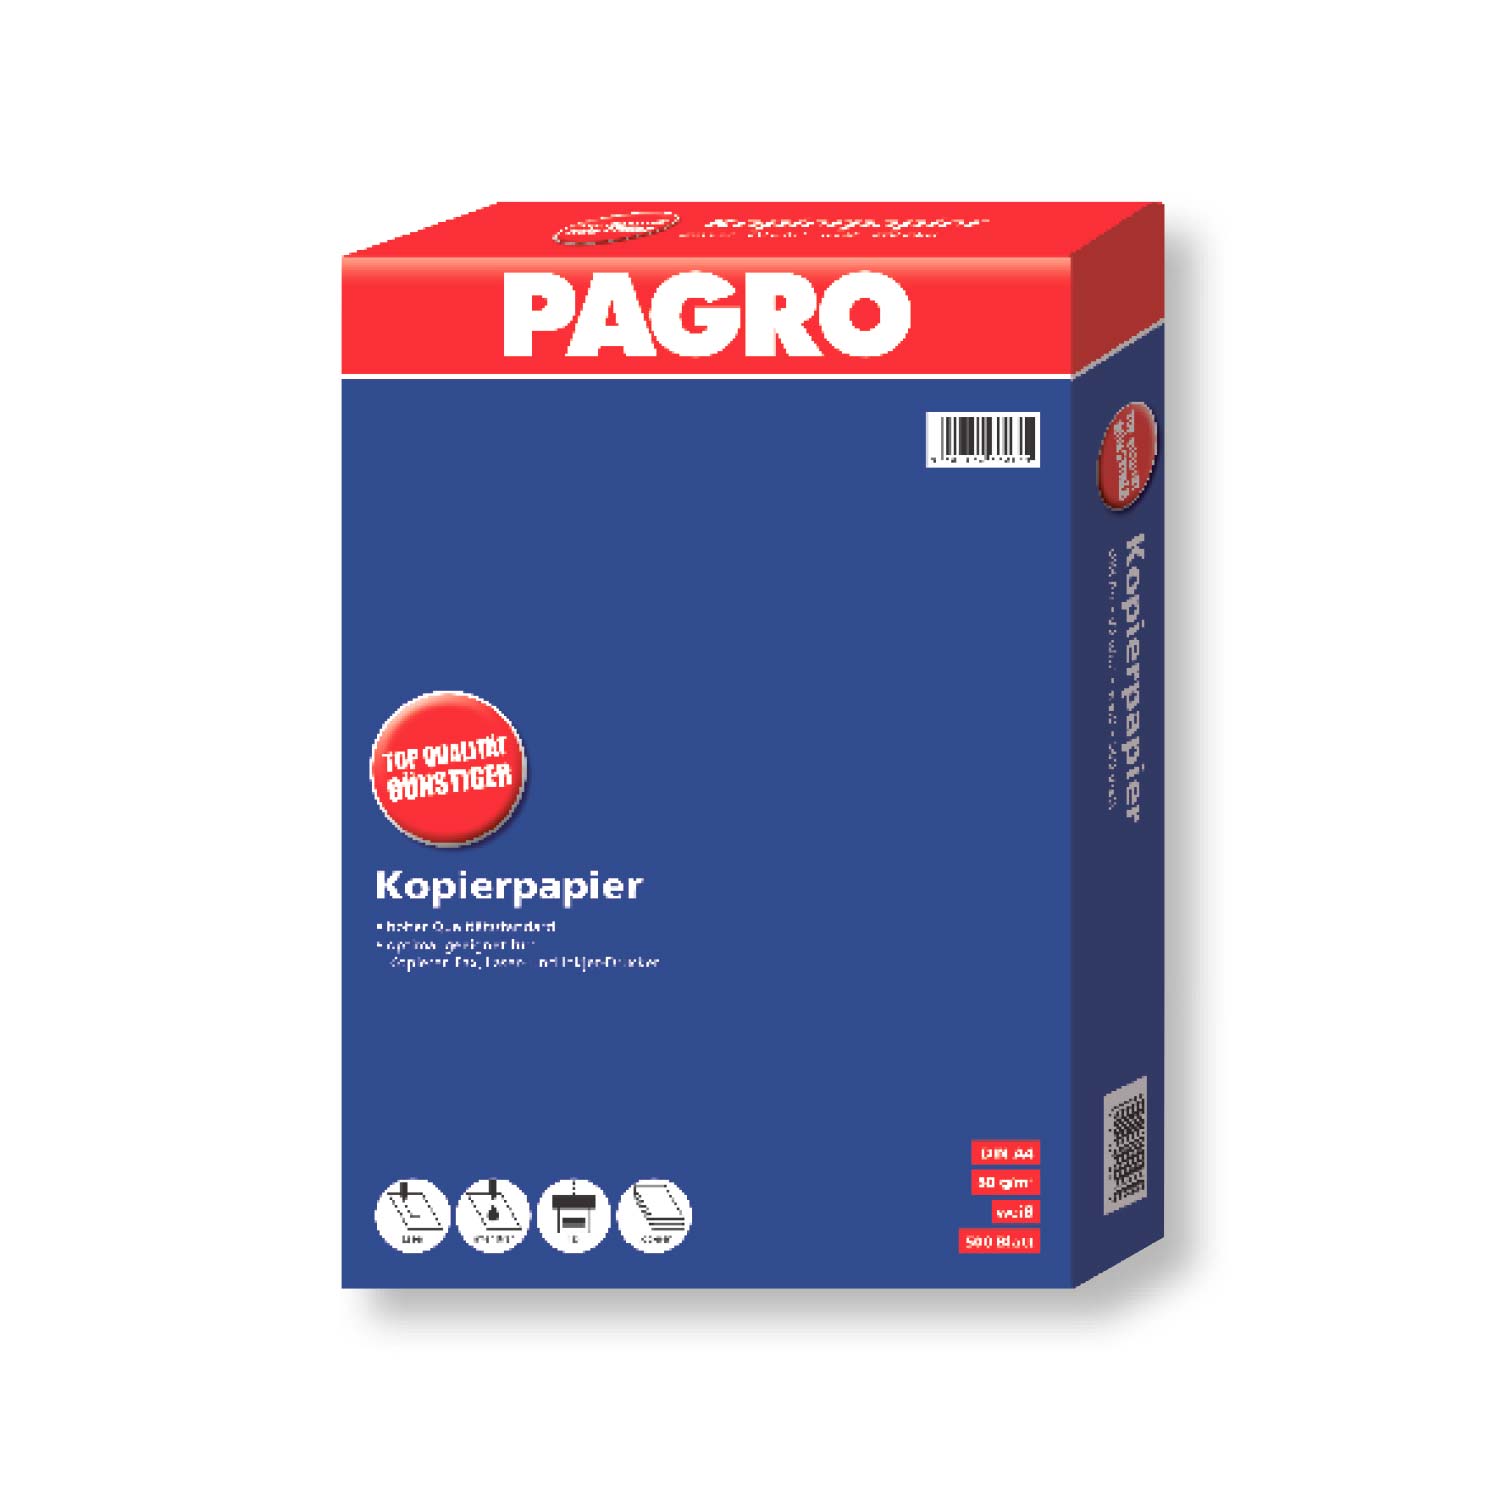 Kopierpapier Pagro DIN A4 in weiß mit 500 Blatt